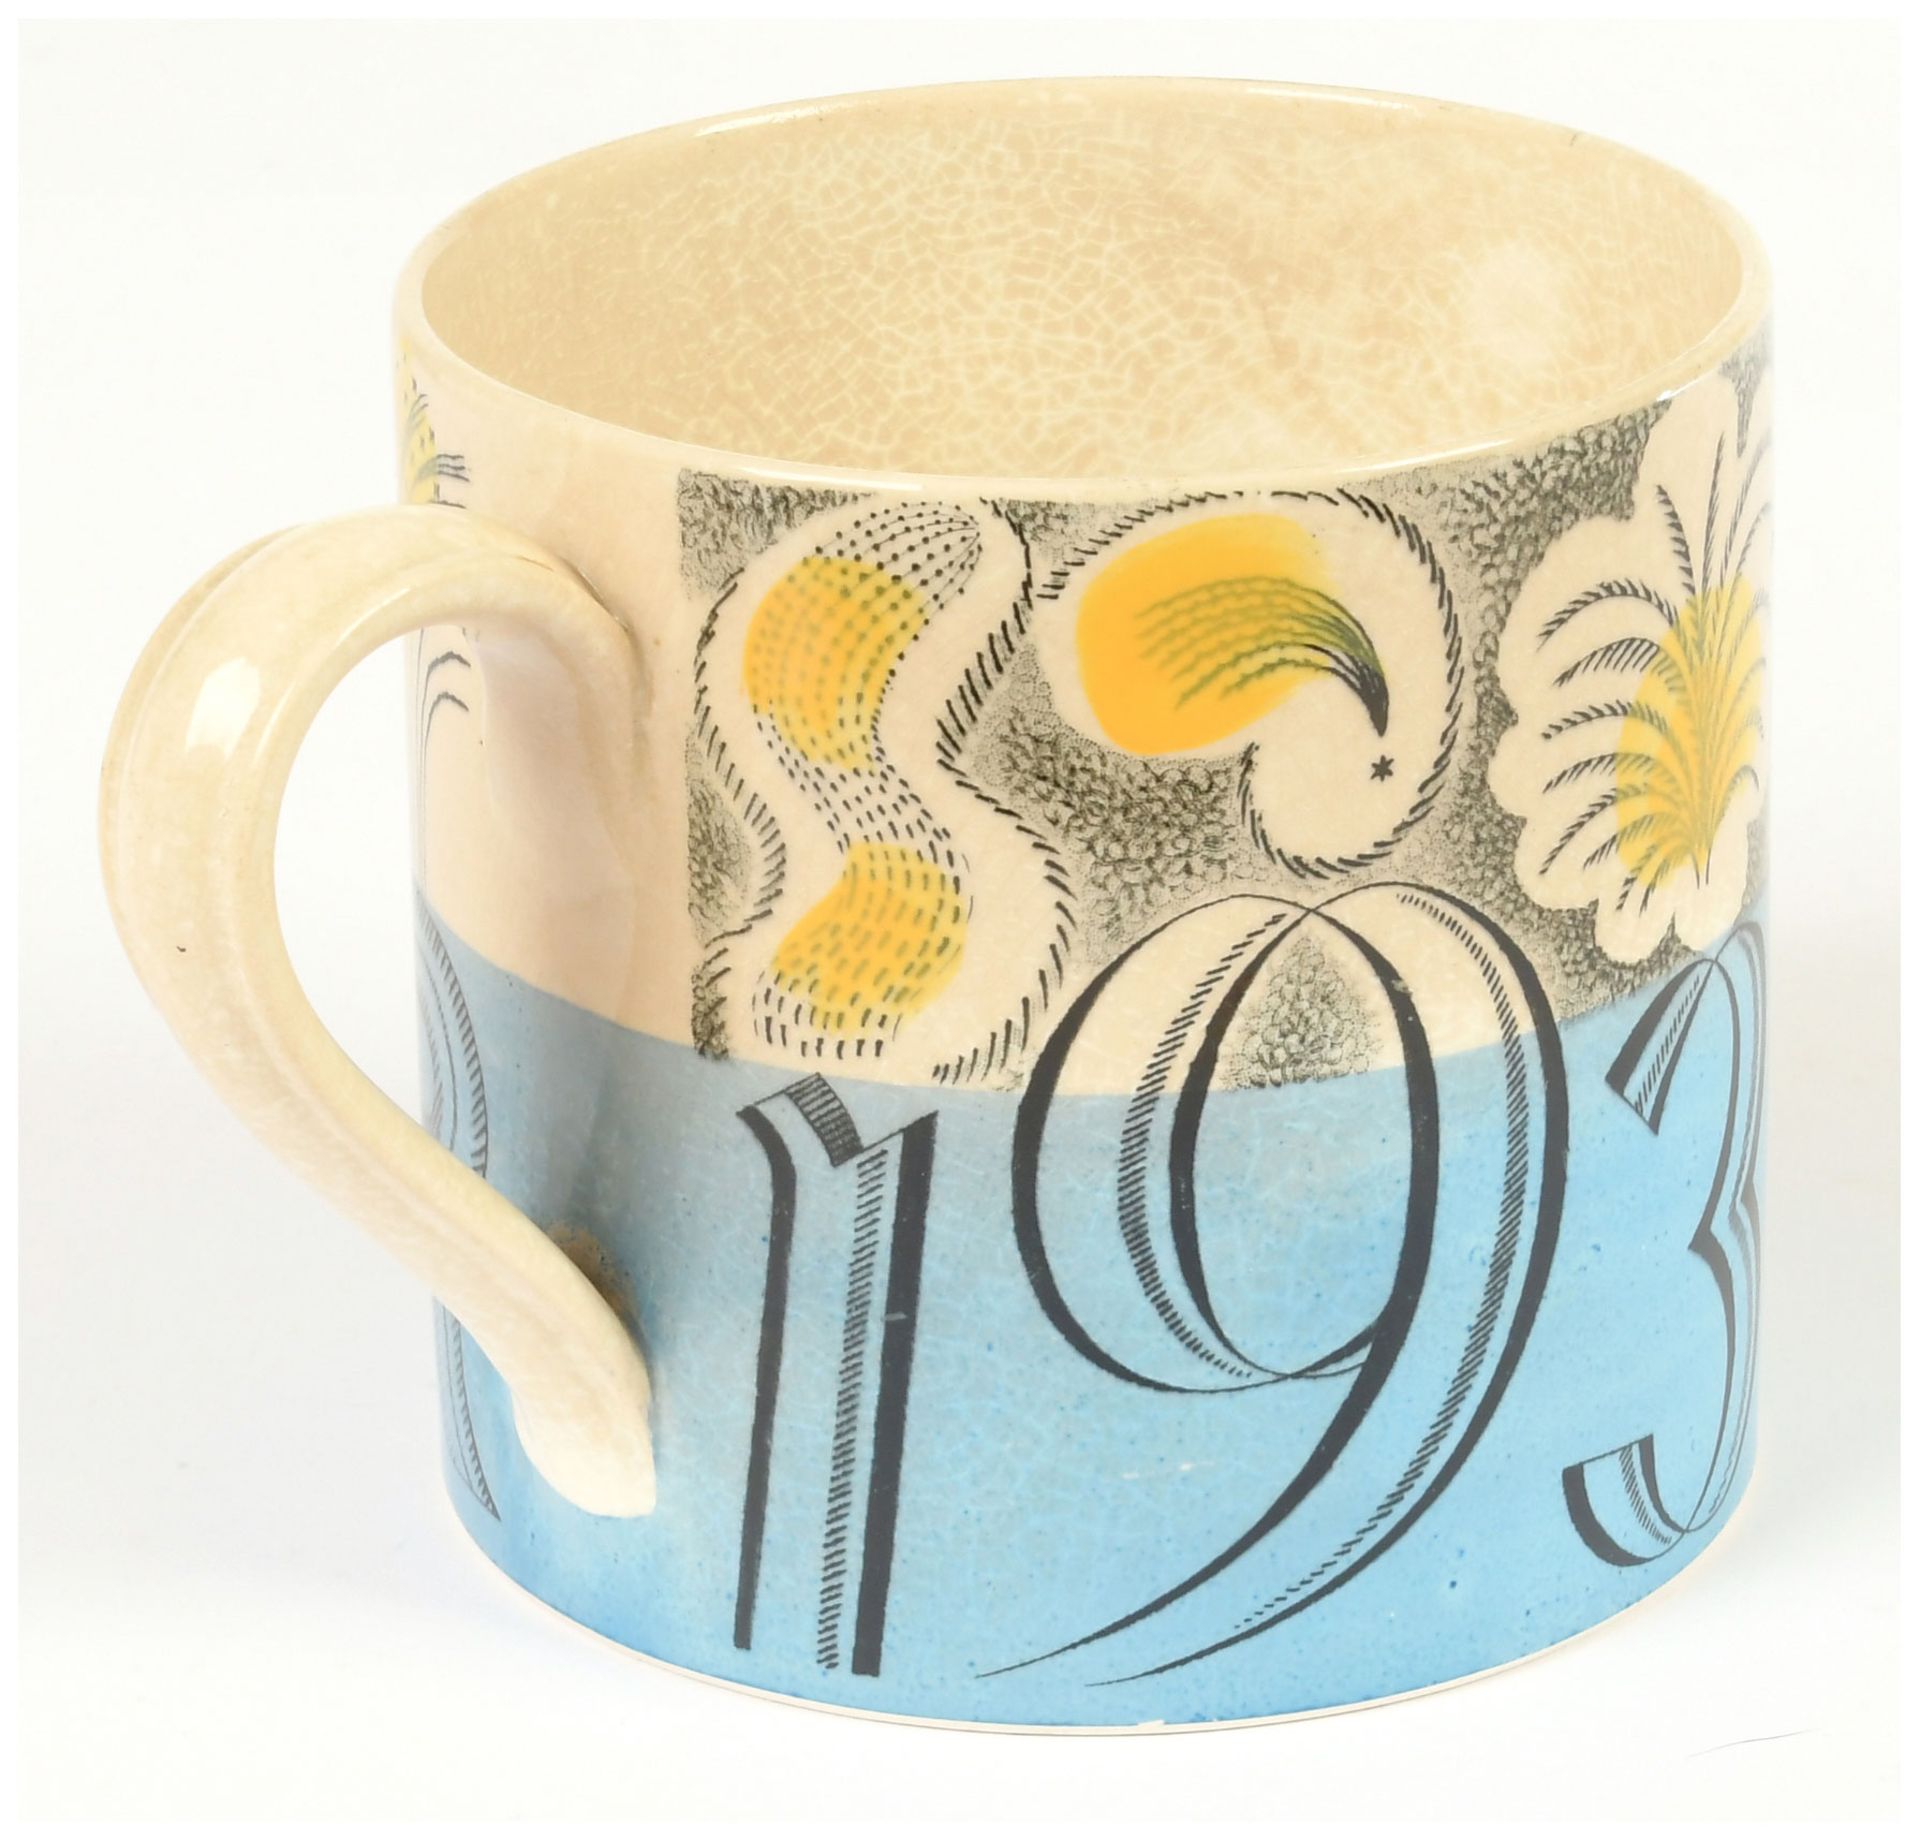 Wedgewood commemorative mug designed by Eric - Image 5 of 7